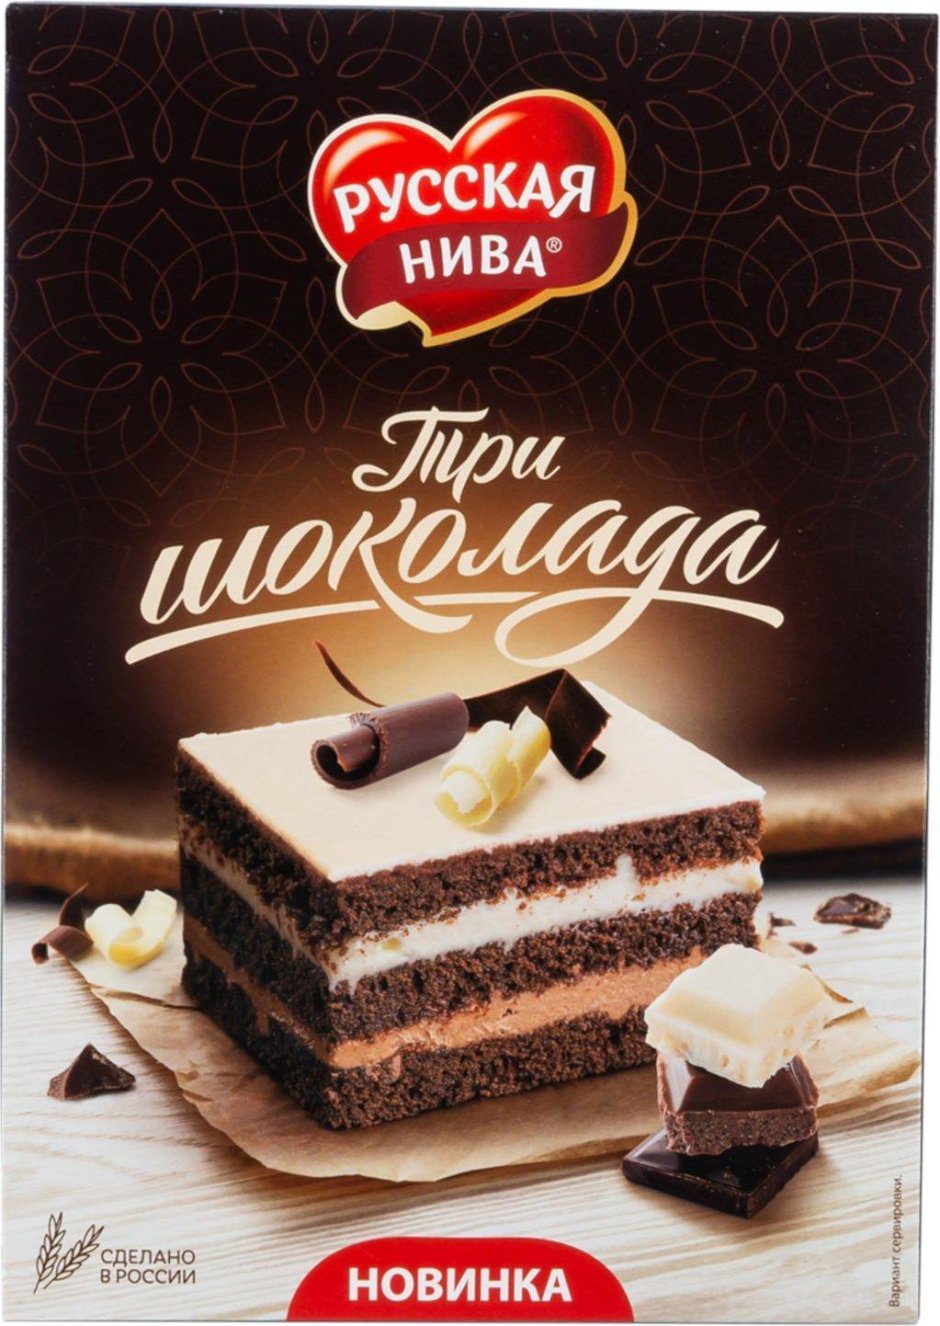 Русская Нива 3 шоколада